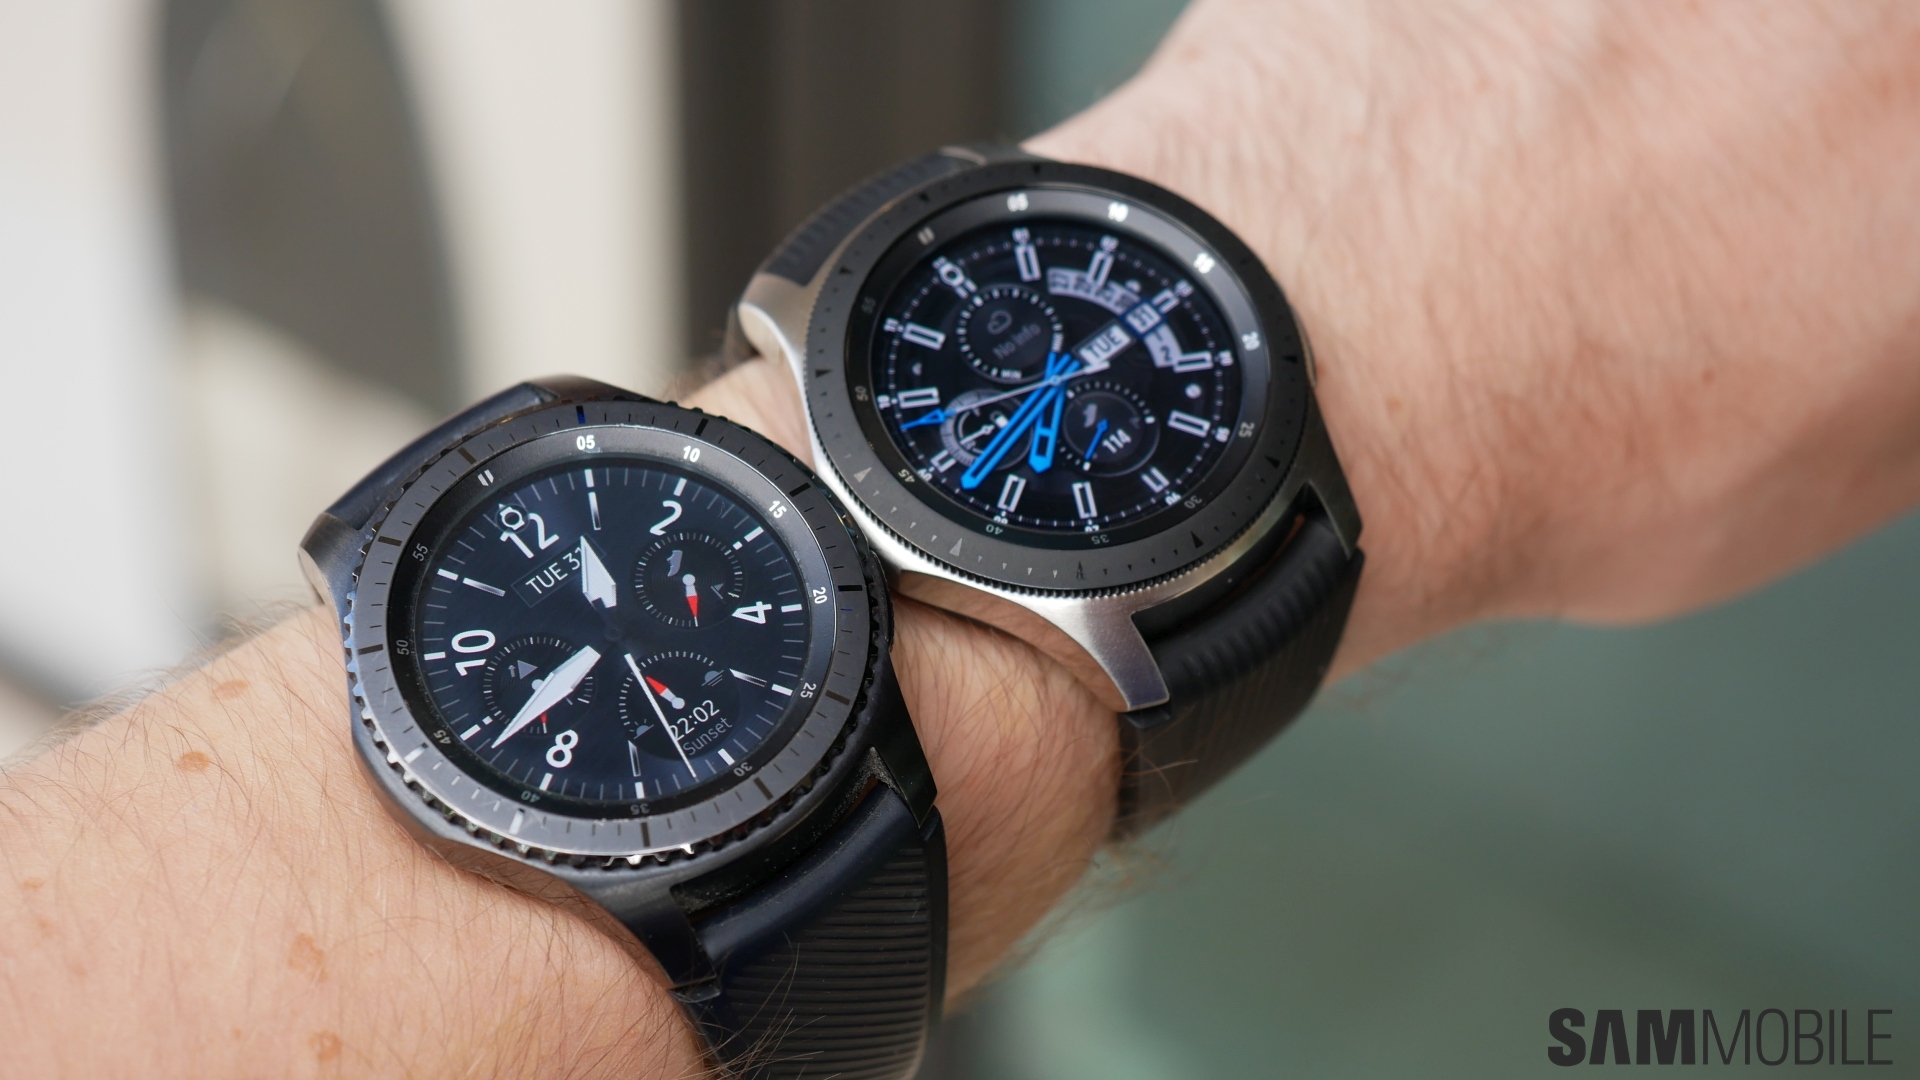 Galaxy-Watch-vs-Gear-S3-2.jpg